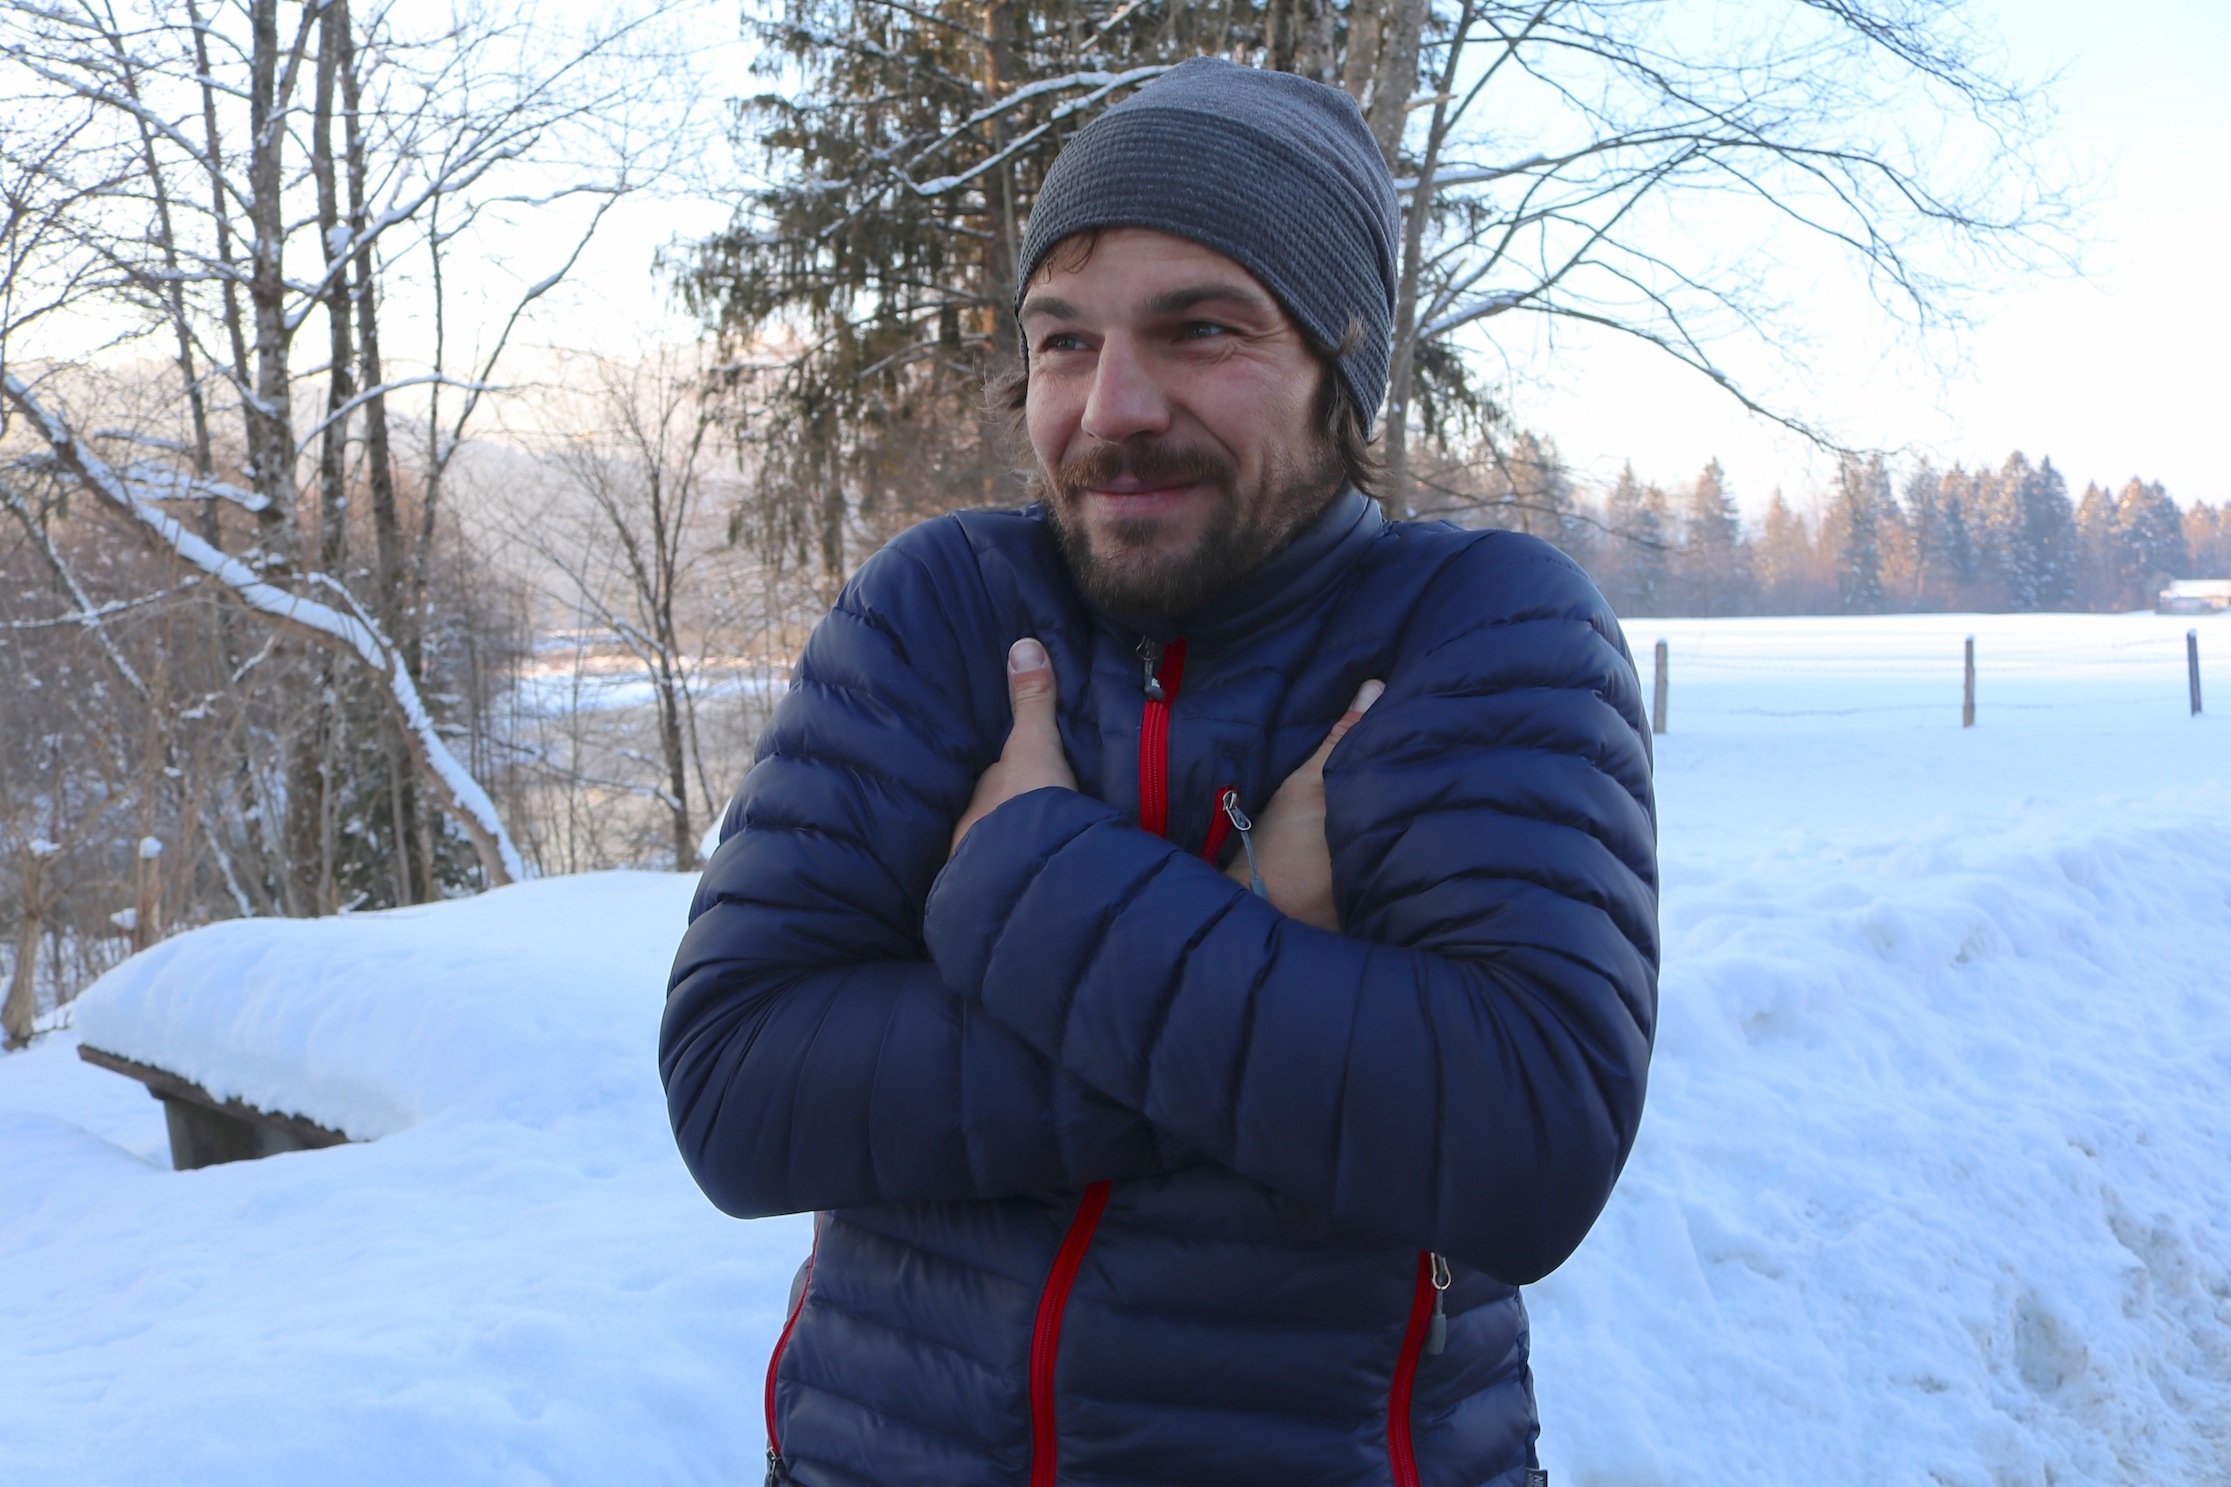 Ratgeber - kalte Hände: 9 Tipps und Tricks für warme Hände und Finger im Winter